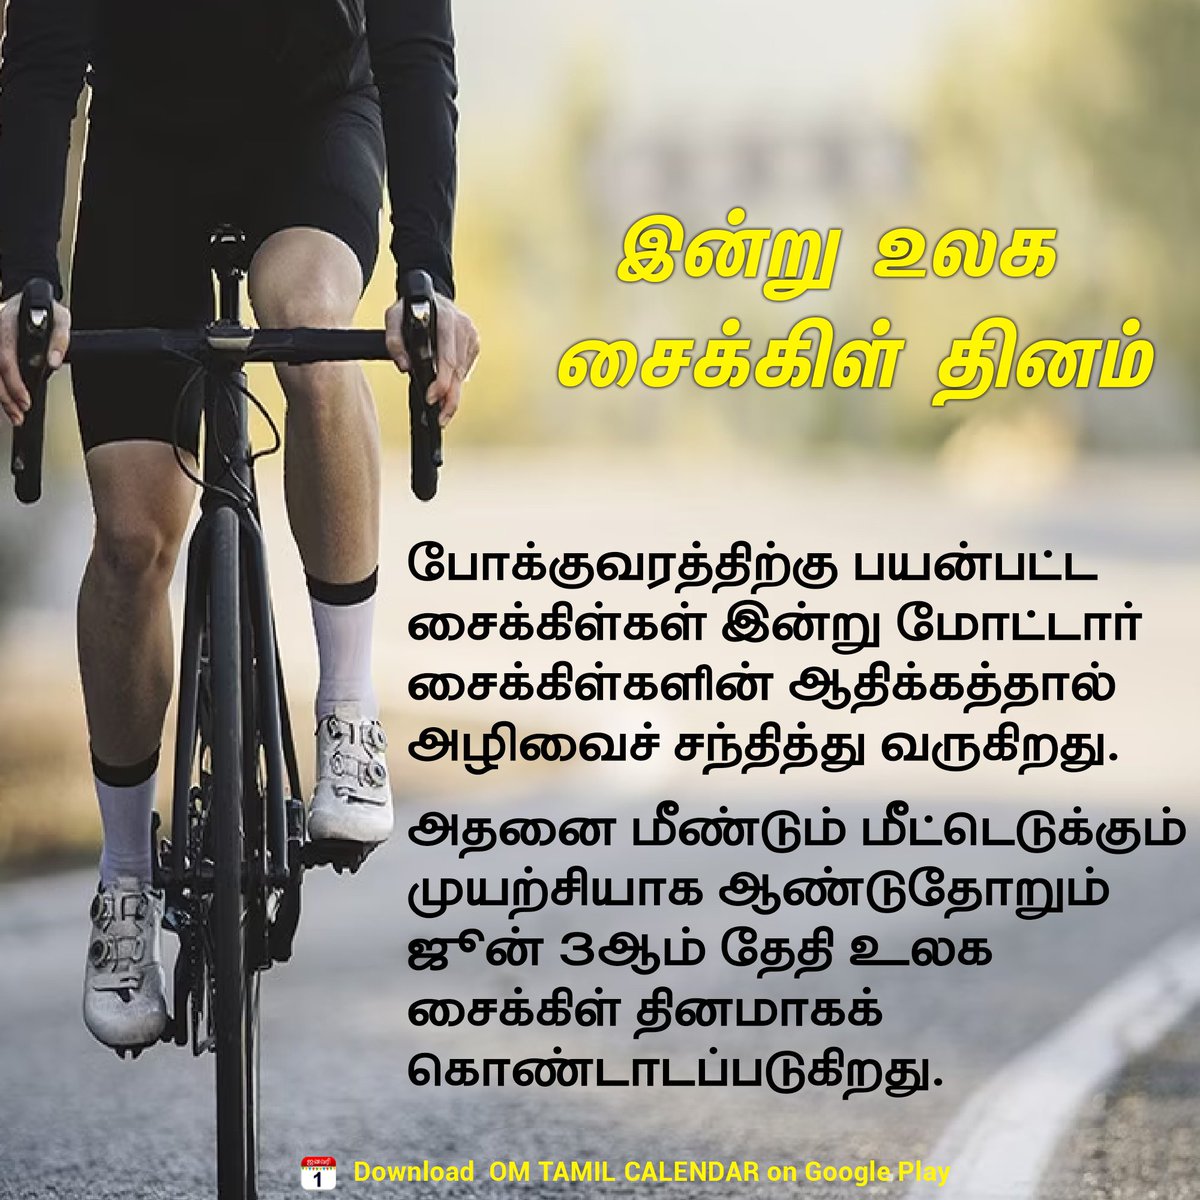 இன்று உலக சைக்கிள் தினம்🚴🏻‍♀️🚴🏻‍♂️

#WorldBicycleDay #bicycle #Awareness #tamilnews #newstamil #omtamilcalendar